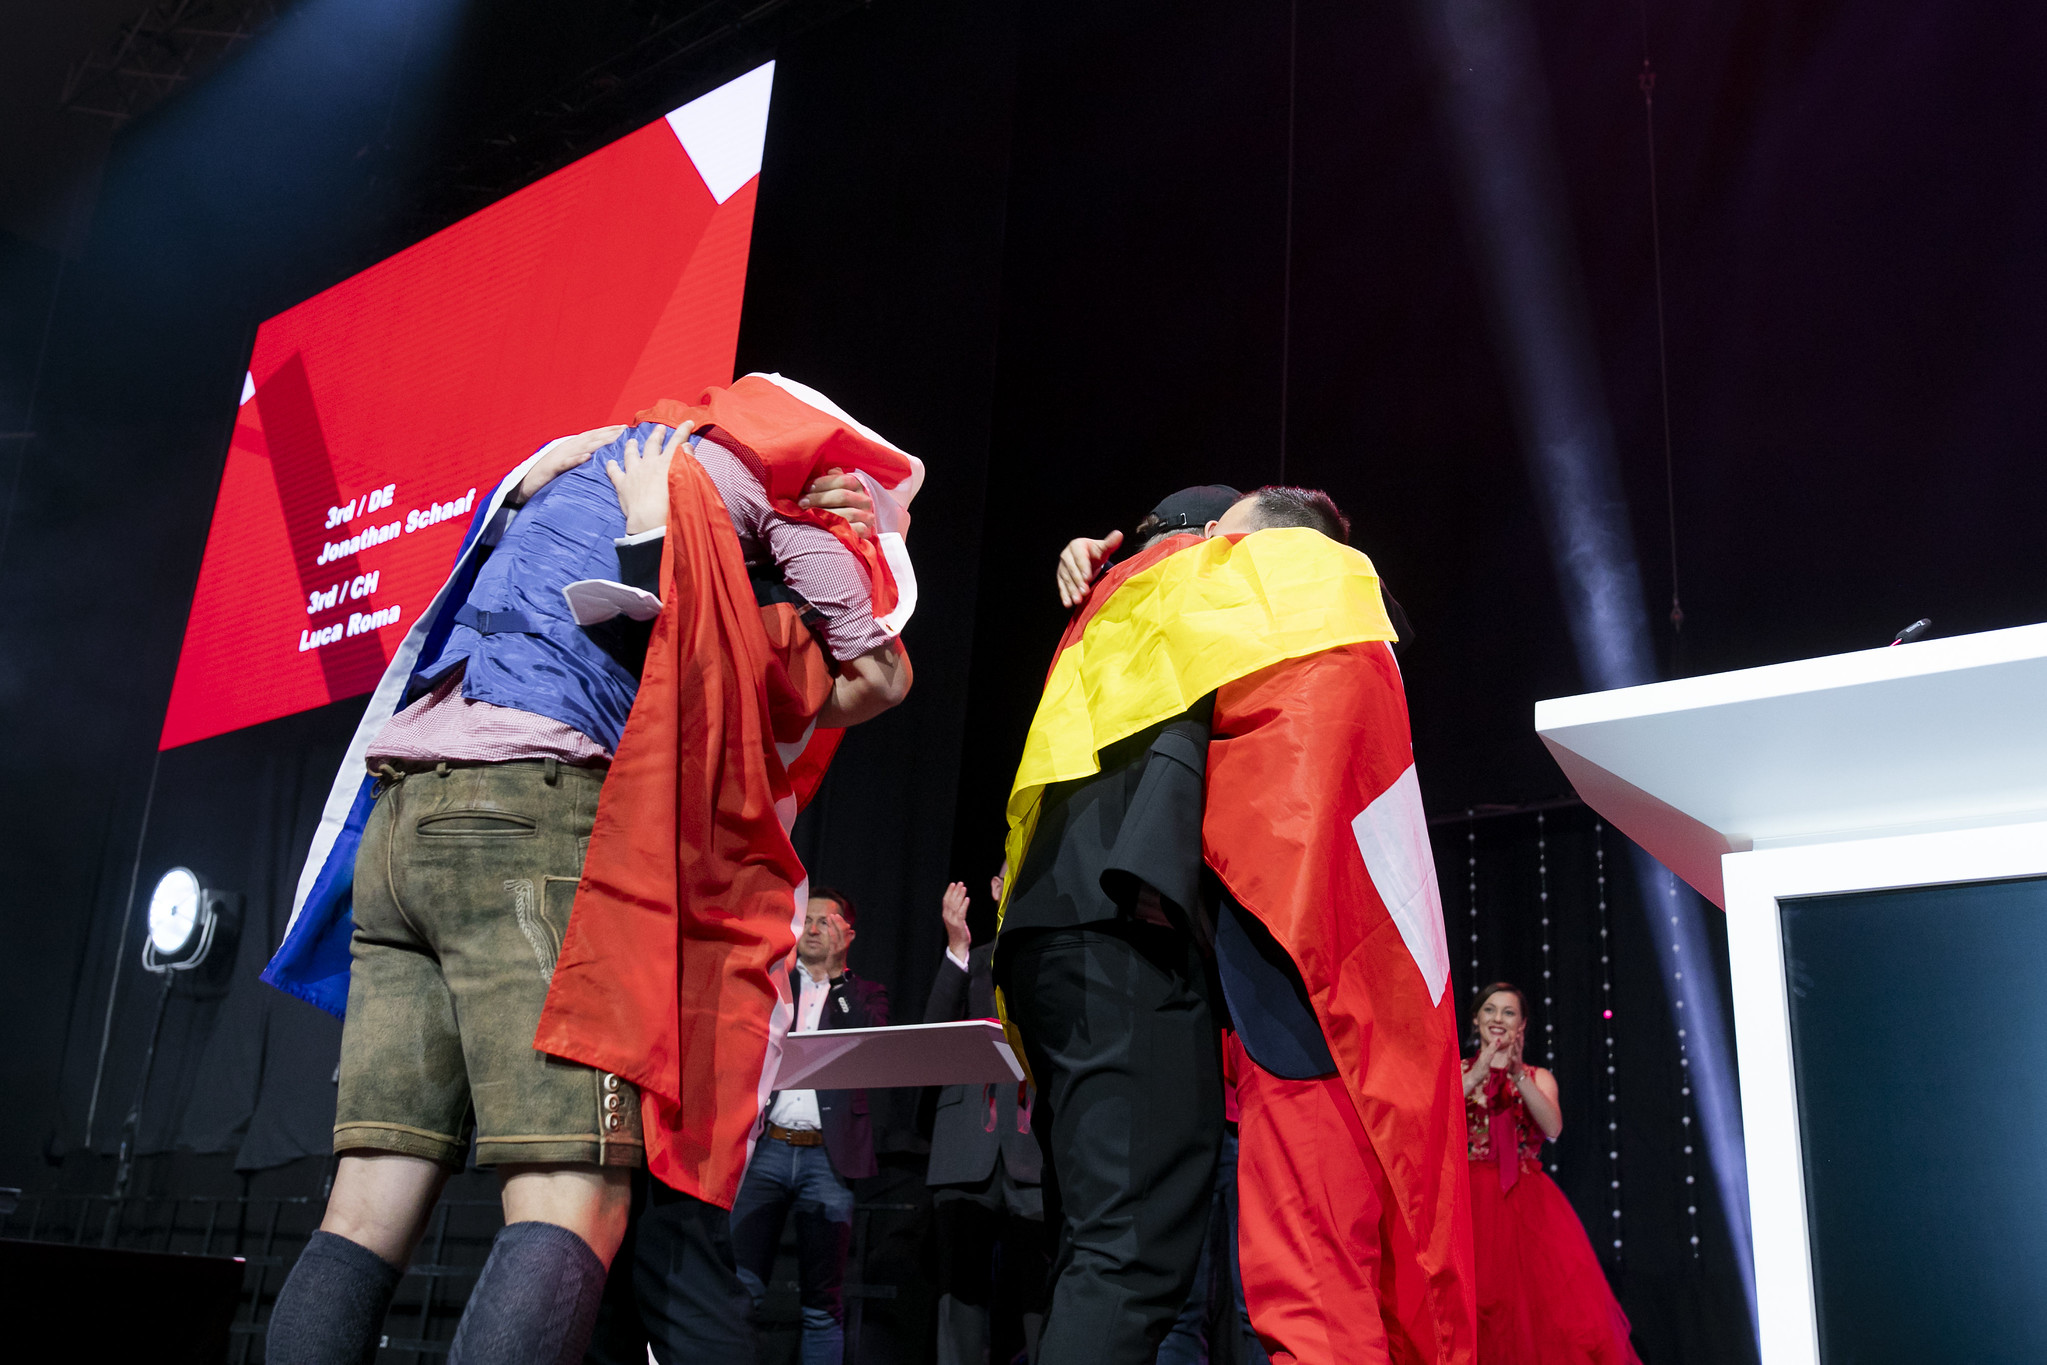 Pure Emotionen und Teamgeist: Bei den EuroSkills umarmen sich auch die Wettkampfgegner.